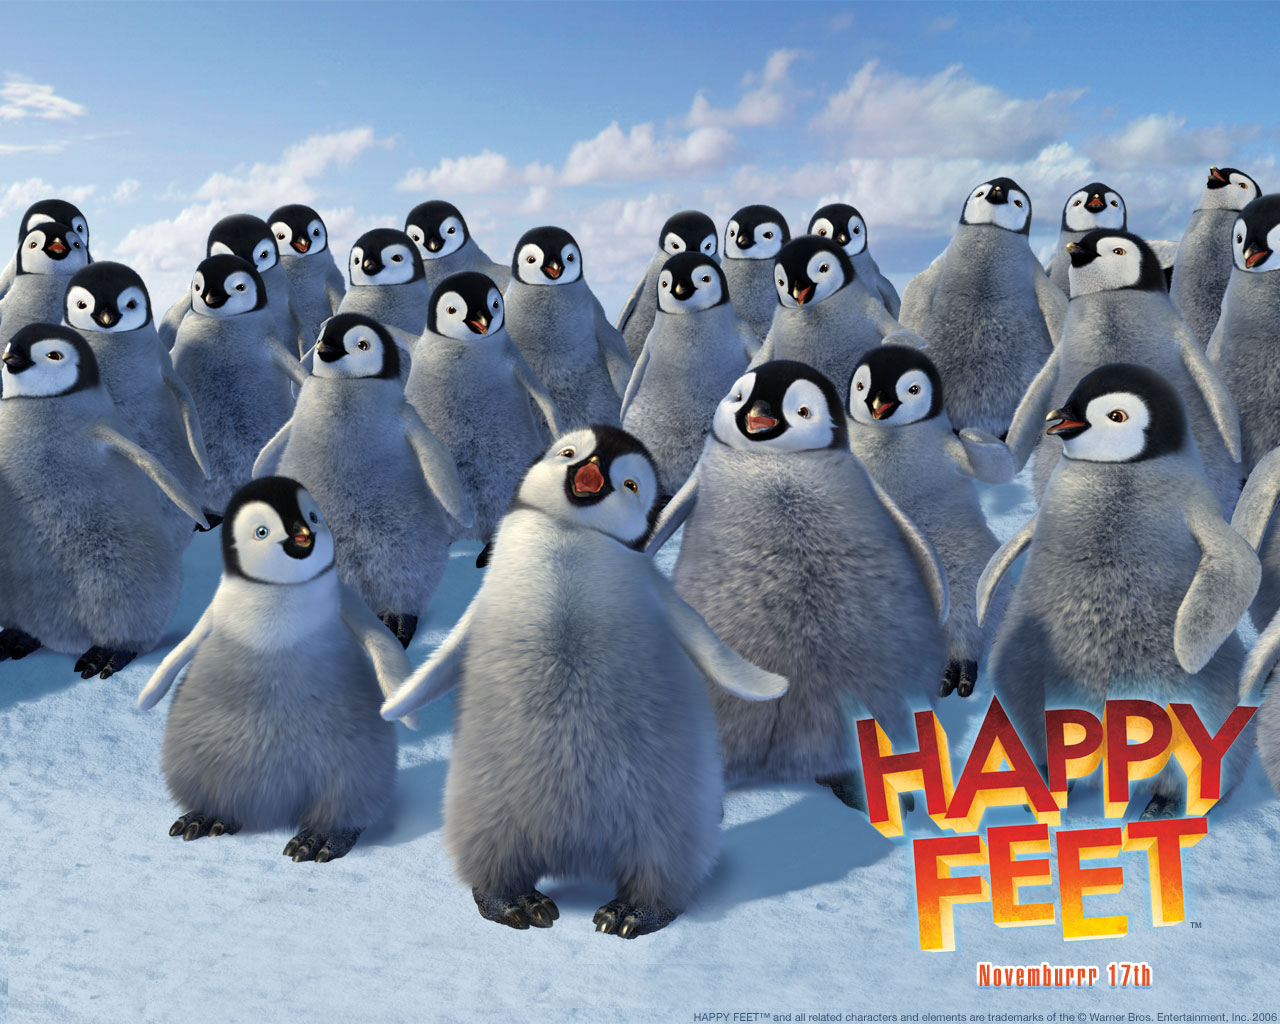 "Happy Feet" desktop wallpaper number 1 (1280 x 1024 pixels)